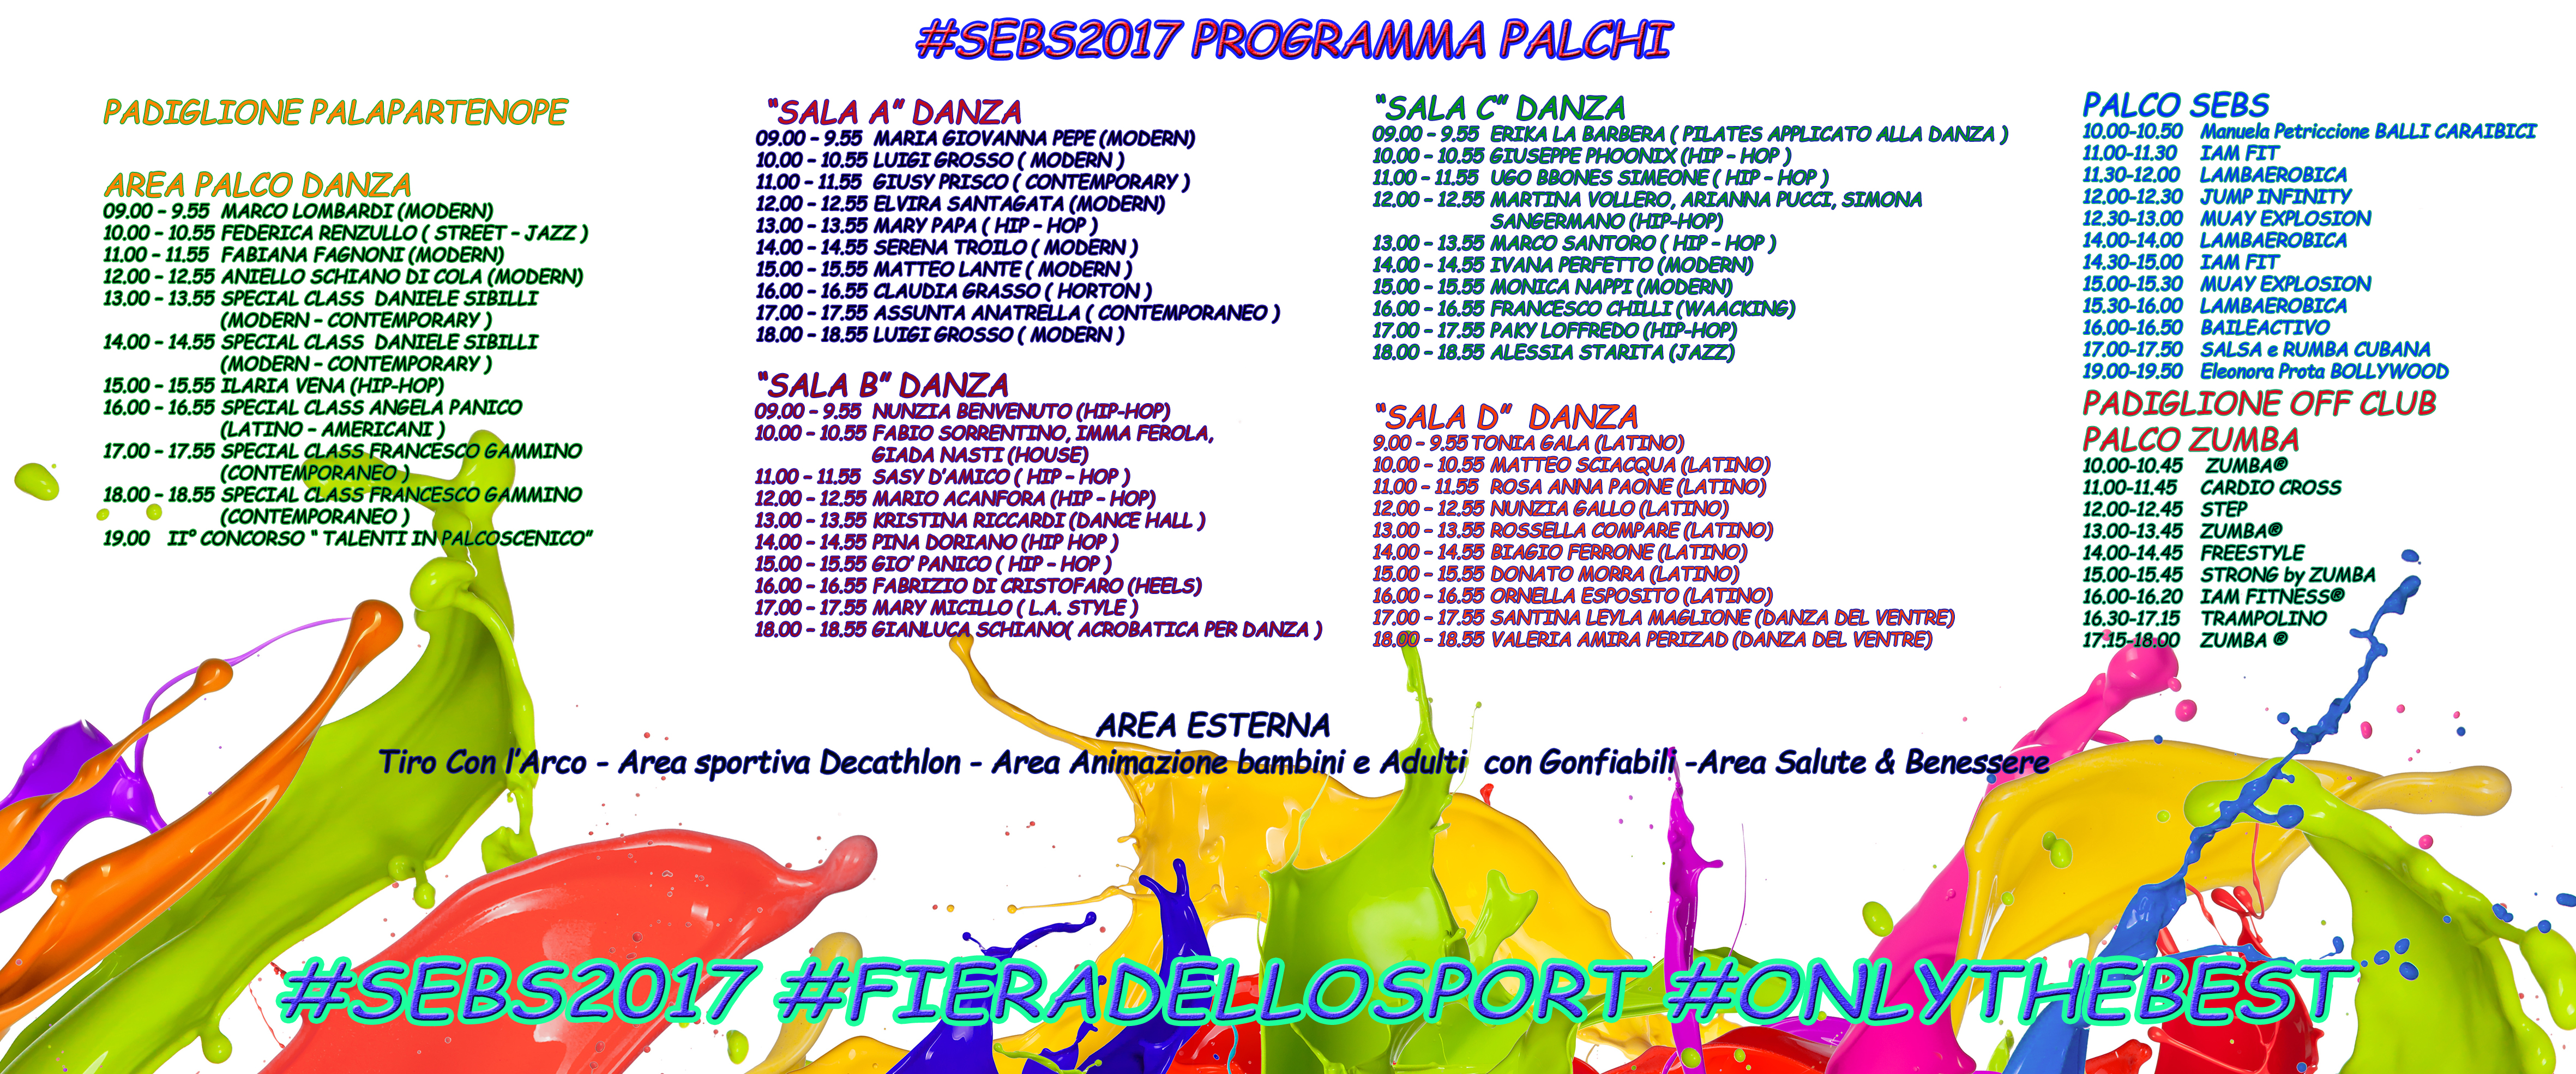 Inizia il conto alla rovescia per il SEBS LA FIERA DELLO SPORT IX^ Edizione. L’evento sportivo più importante del sud Italia.